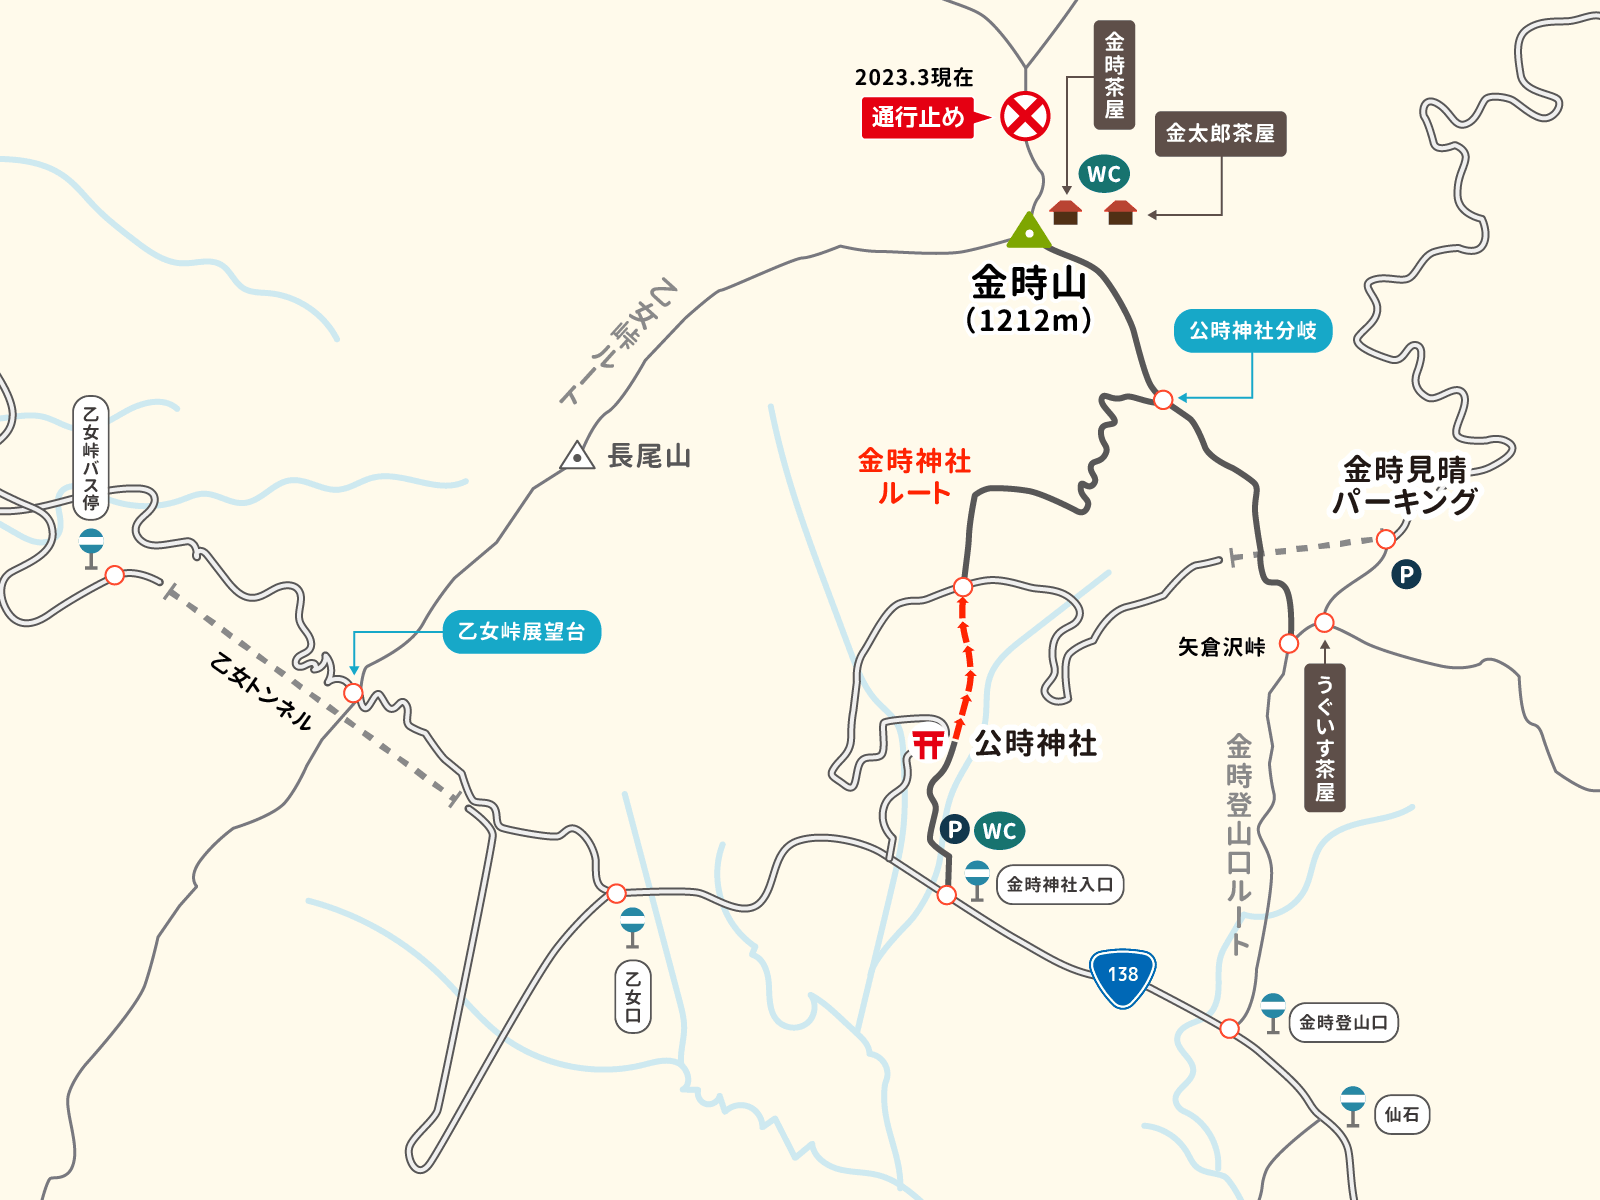 公時神社ルートのイラストマップ1